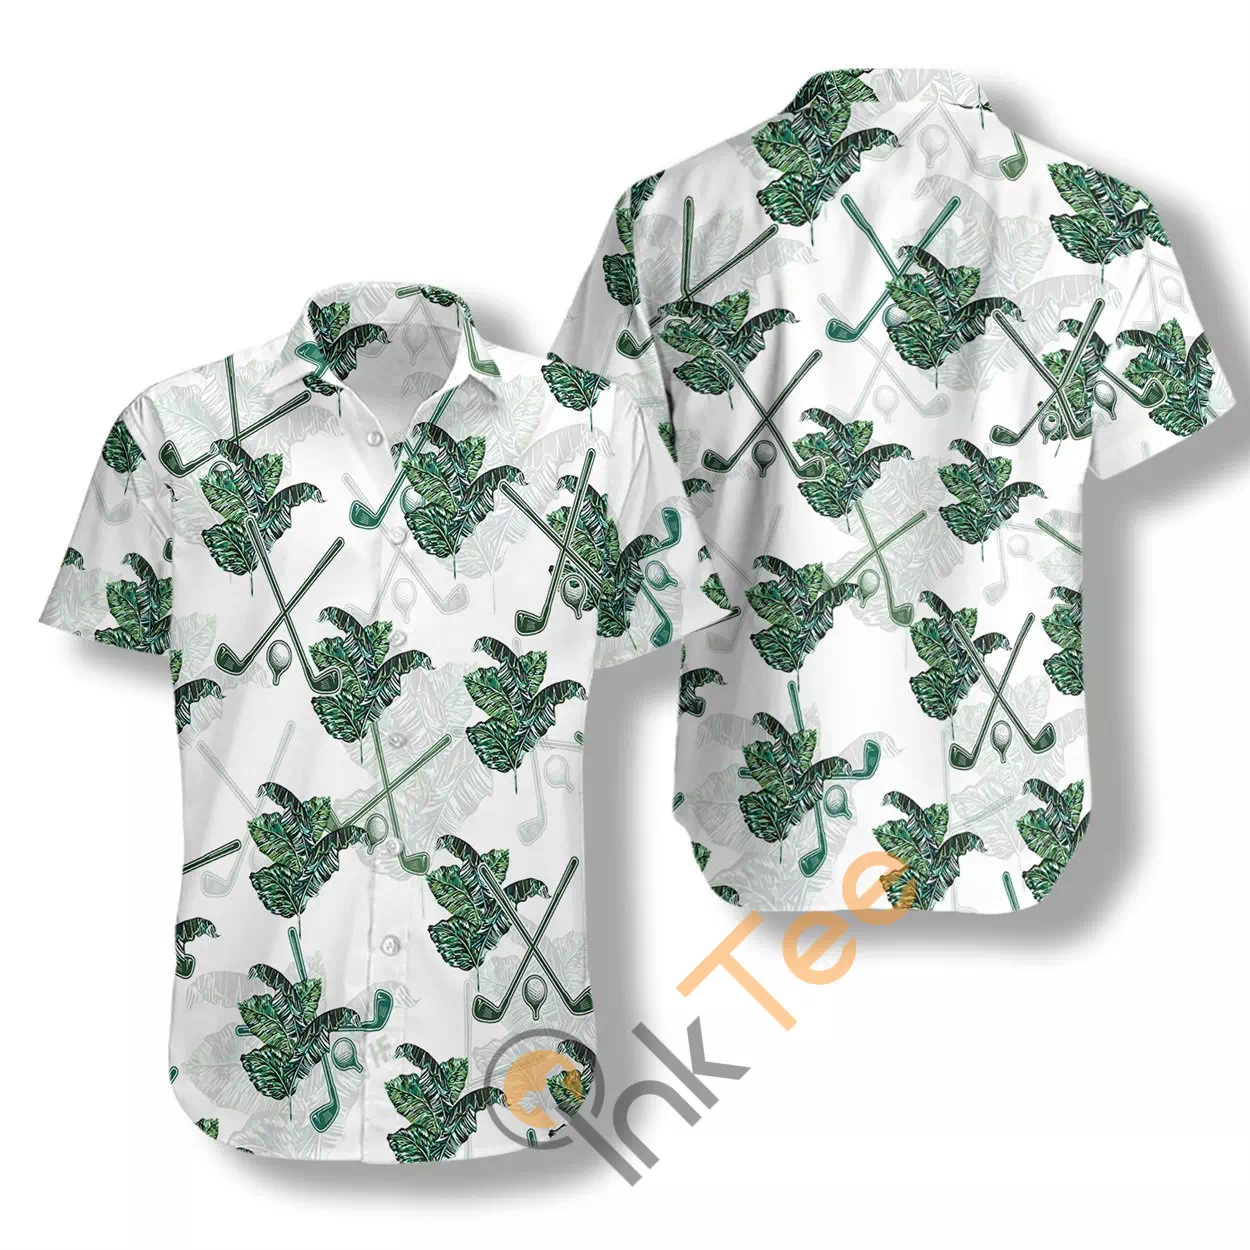 Tropical Golf 2 N553 Hawaiian shirts